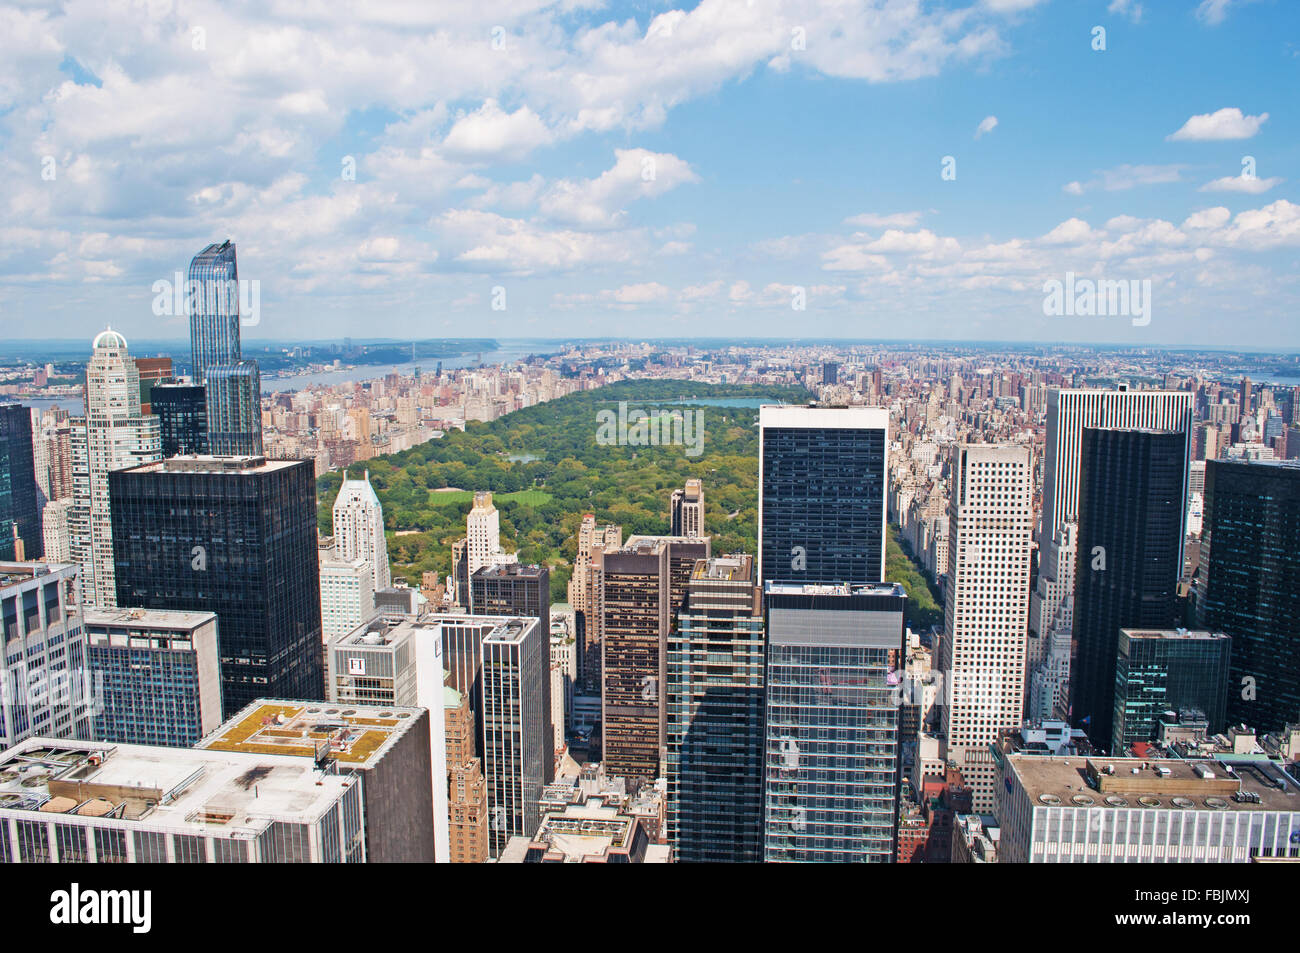 Nueva York, EE.UU.: el horizonte de Manhattan con sus rascacielos y el Parque Central visto desde la cima de la roca, la plataforma de observación del Rockefeller Center Foto de stock